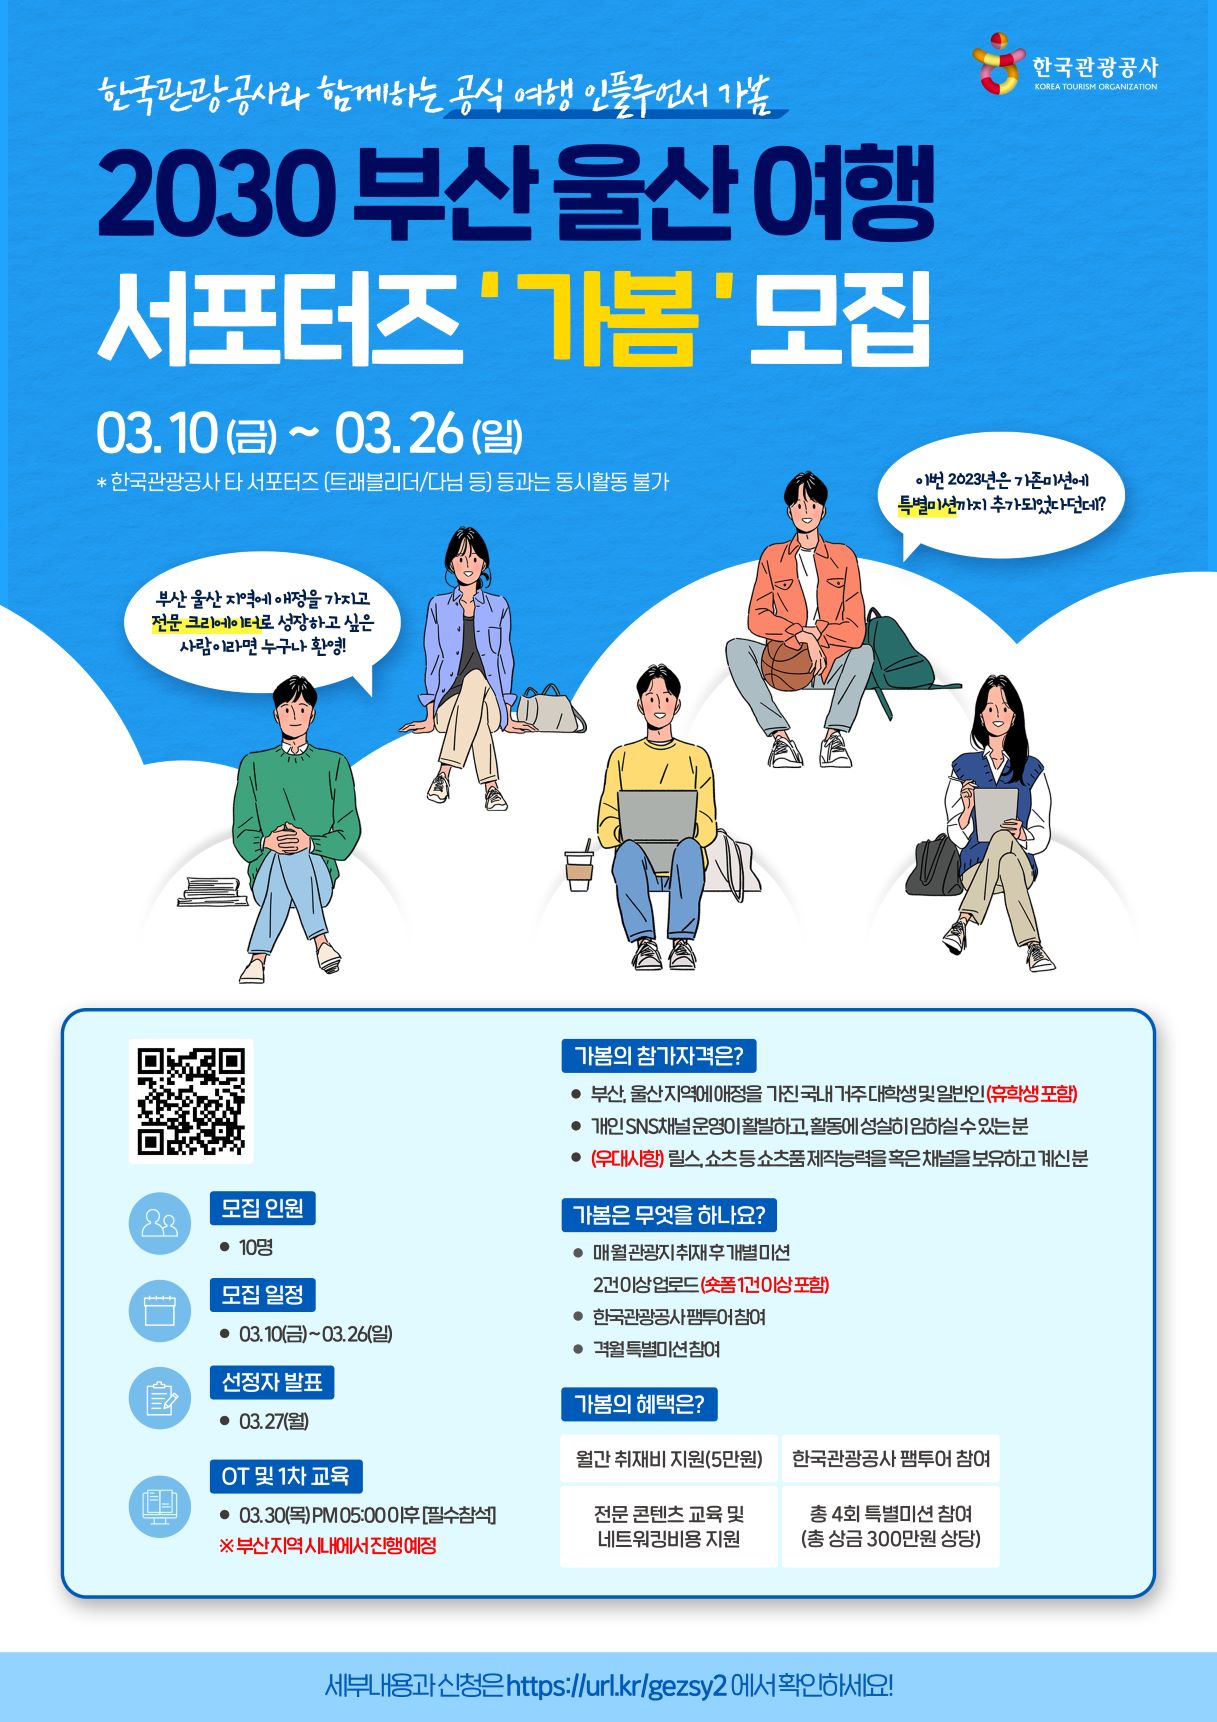 한국관광공사 공식 여행 인플루언서 '가봄' 모집